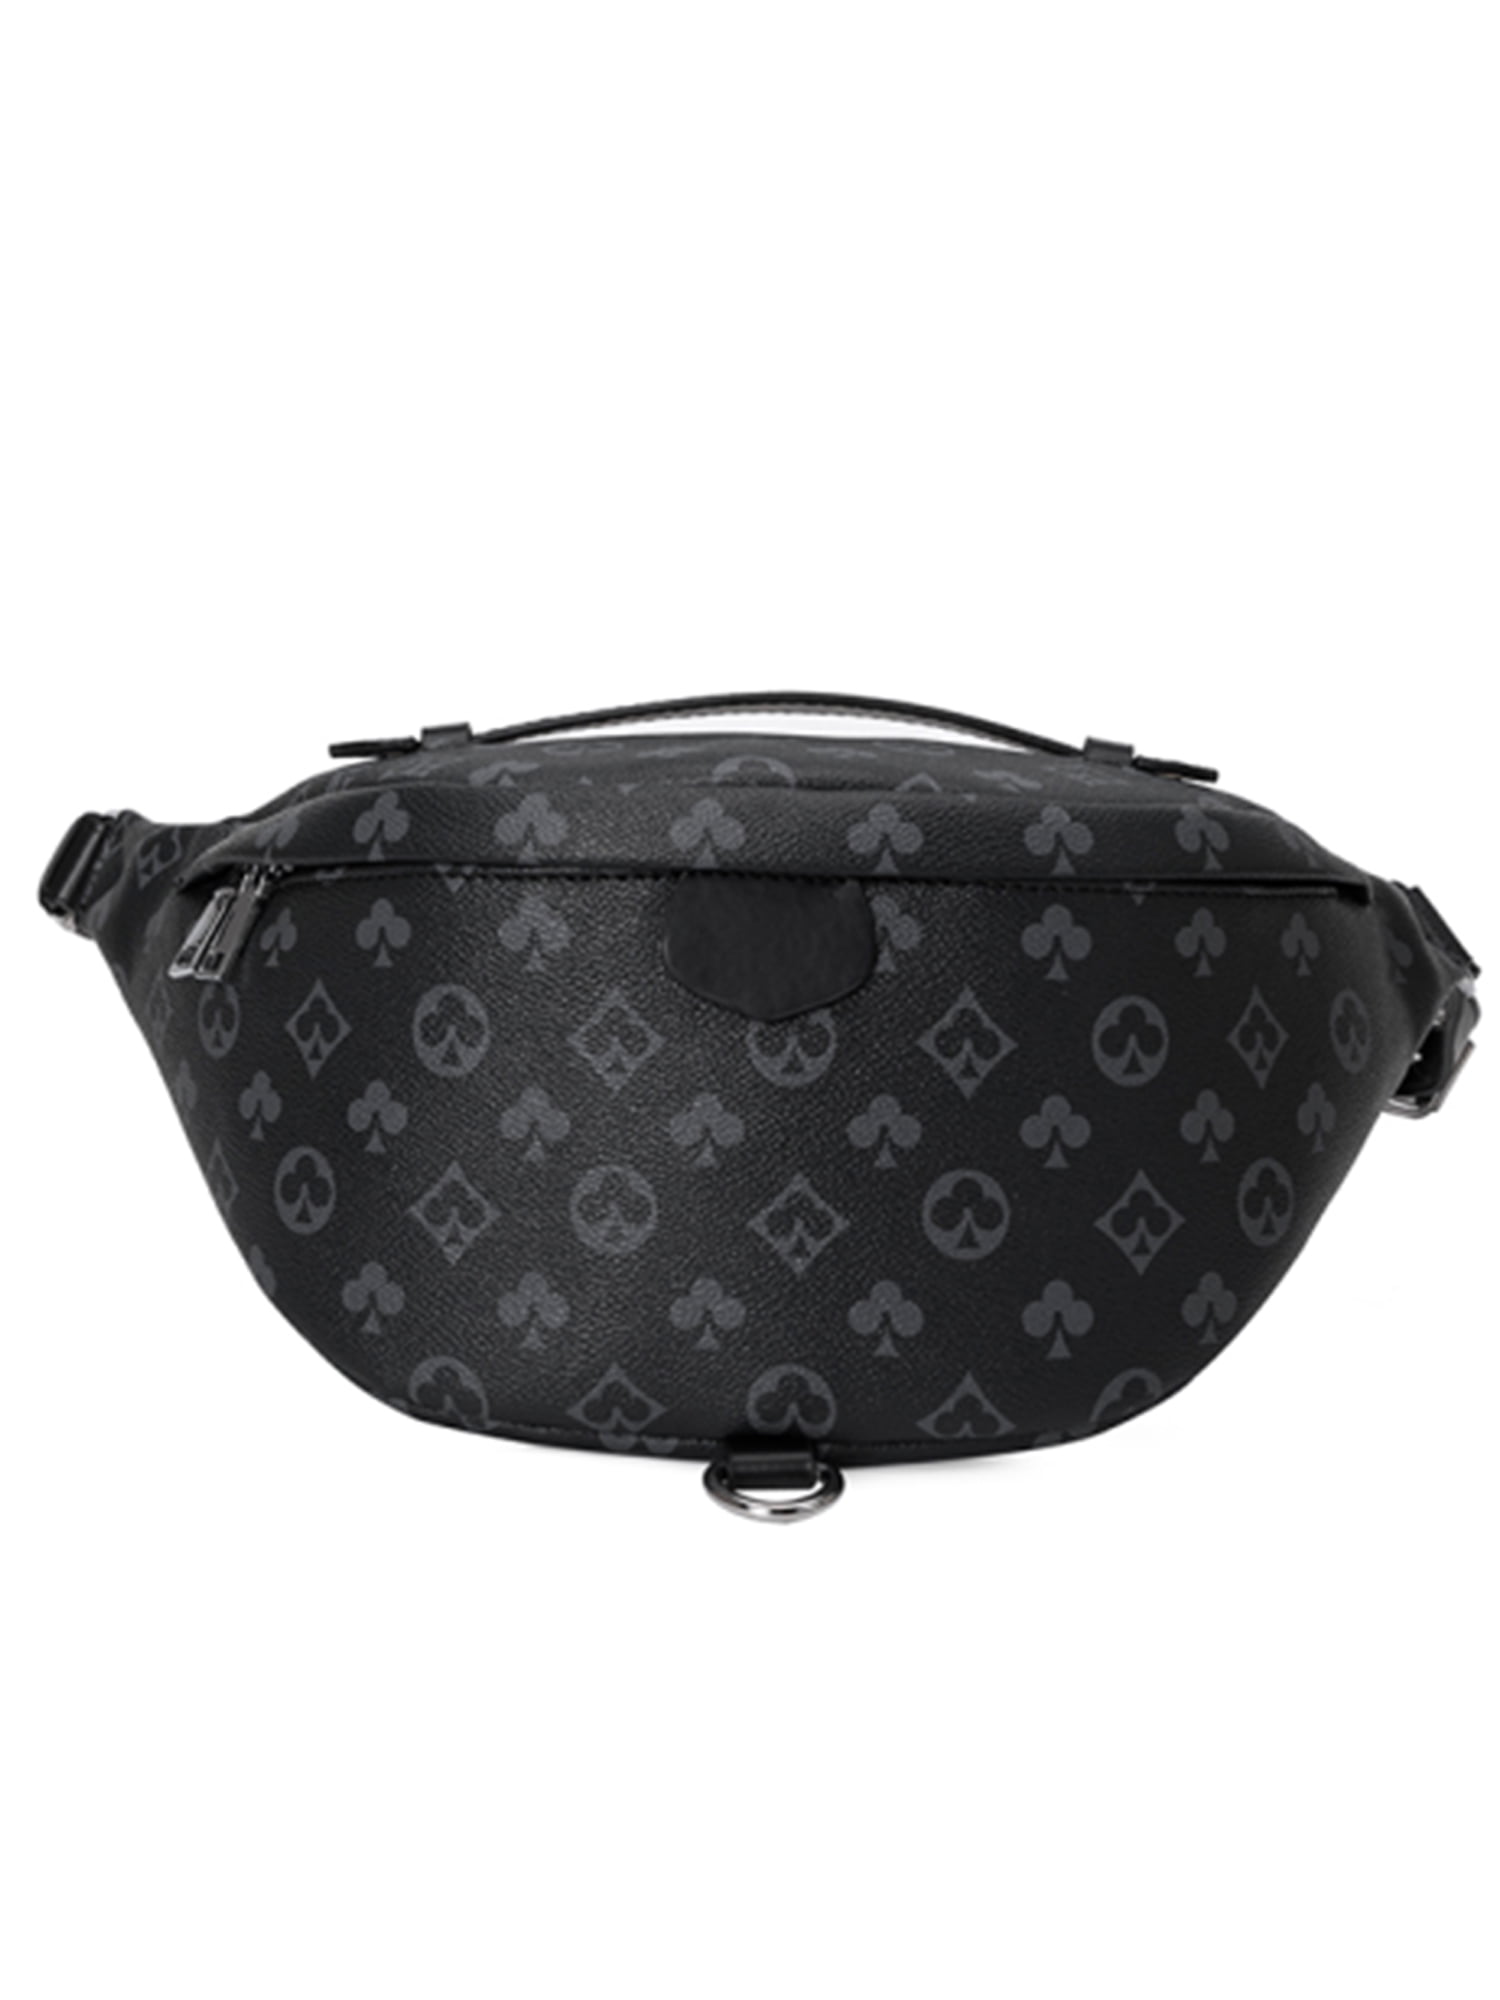 LUXUR Fashion Men Women Bags Belt Bag Checkered Packs Crossbody Pack Bum Bags,Sling Packs Sport Checkered Belt Bags Waist Bag Flower - Walmart.com